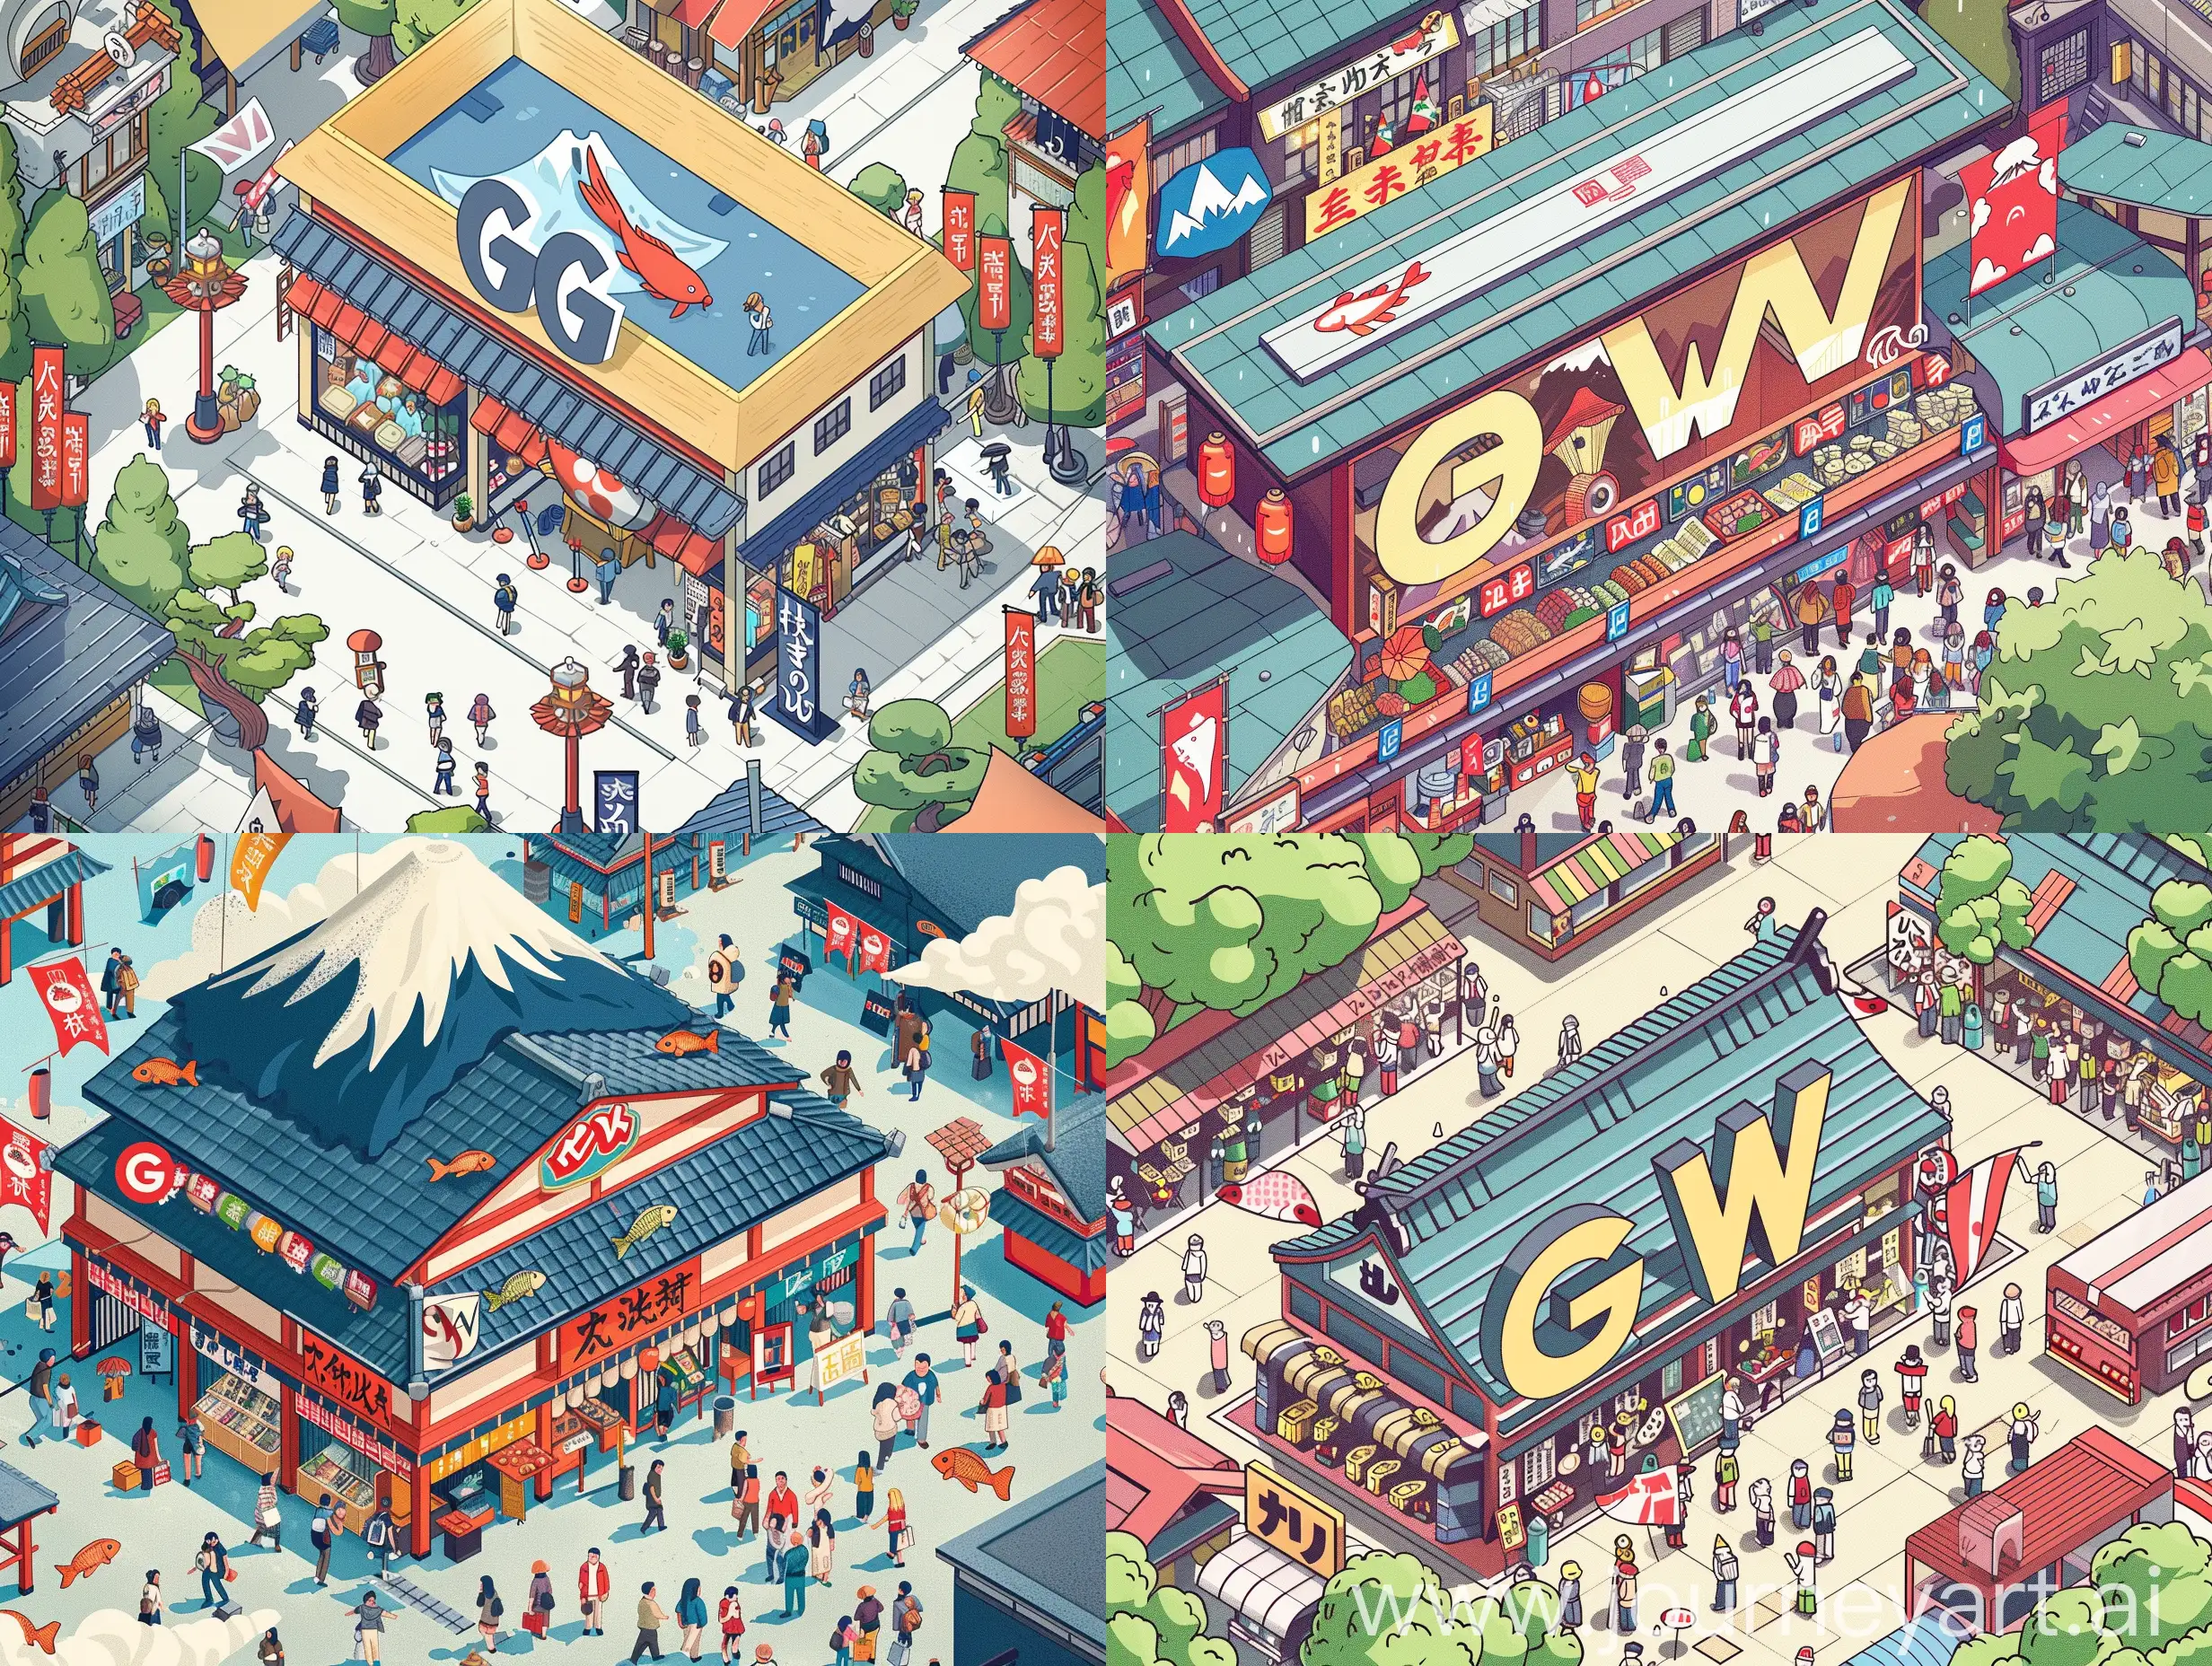 用 G W 两个字母做成日本店铺得样子，周围加一些人群等，营造出一种户外旅游、商场购物的氛围，旁边有鲤鱼旗、富士山元素，俯视角度，卡通风格